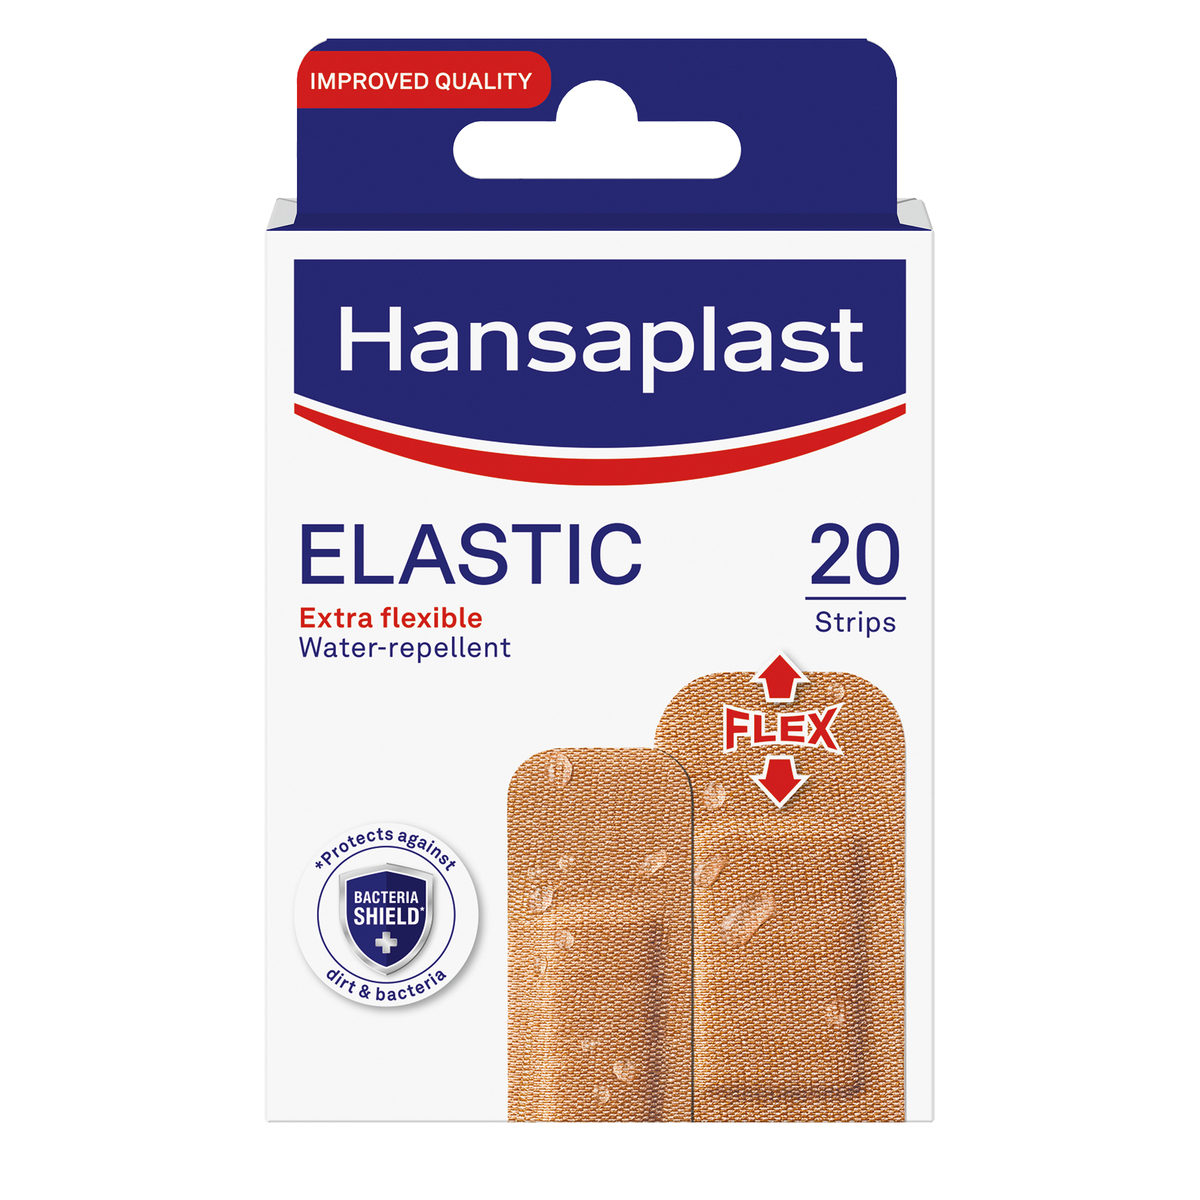 Hansaplast Elastic 20 pcs